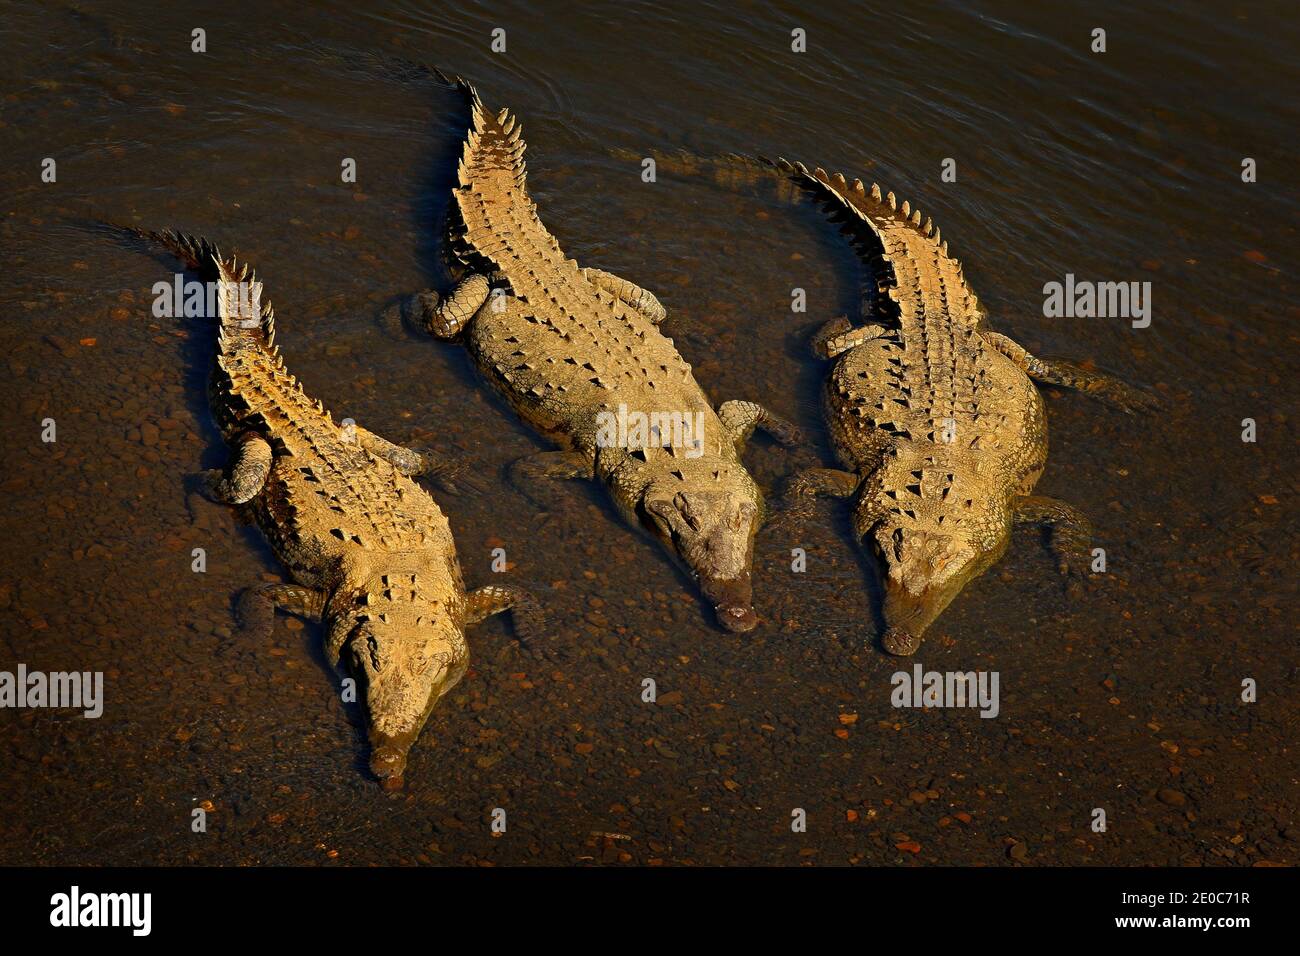 Amerikanische Krokodile, Crocodylus acutus, drei Tiere im Wasser. Wildtierszene aus der Natur, Tarcoles, Costa Rica. Gefährliche Tiere im Fluss. Stockfoto